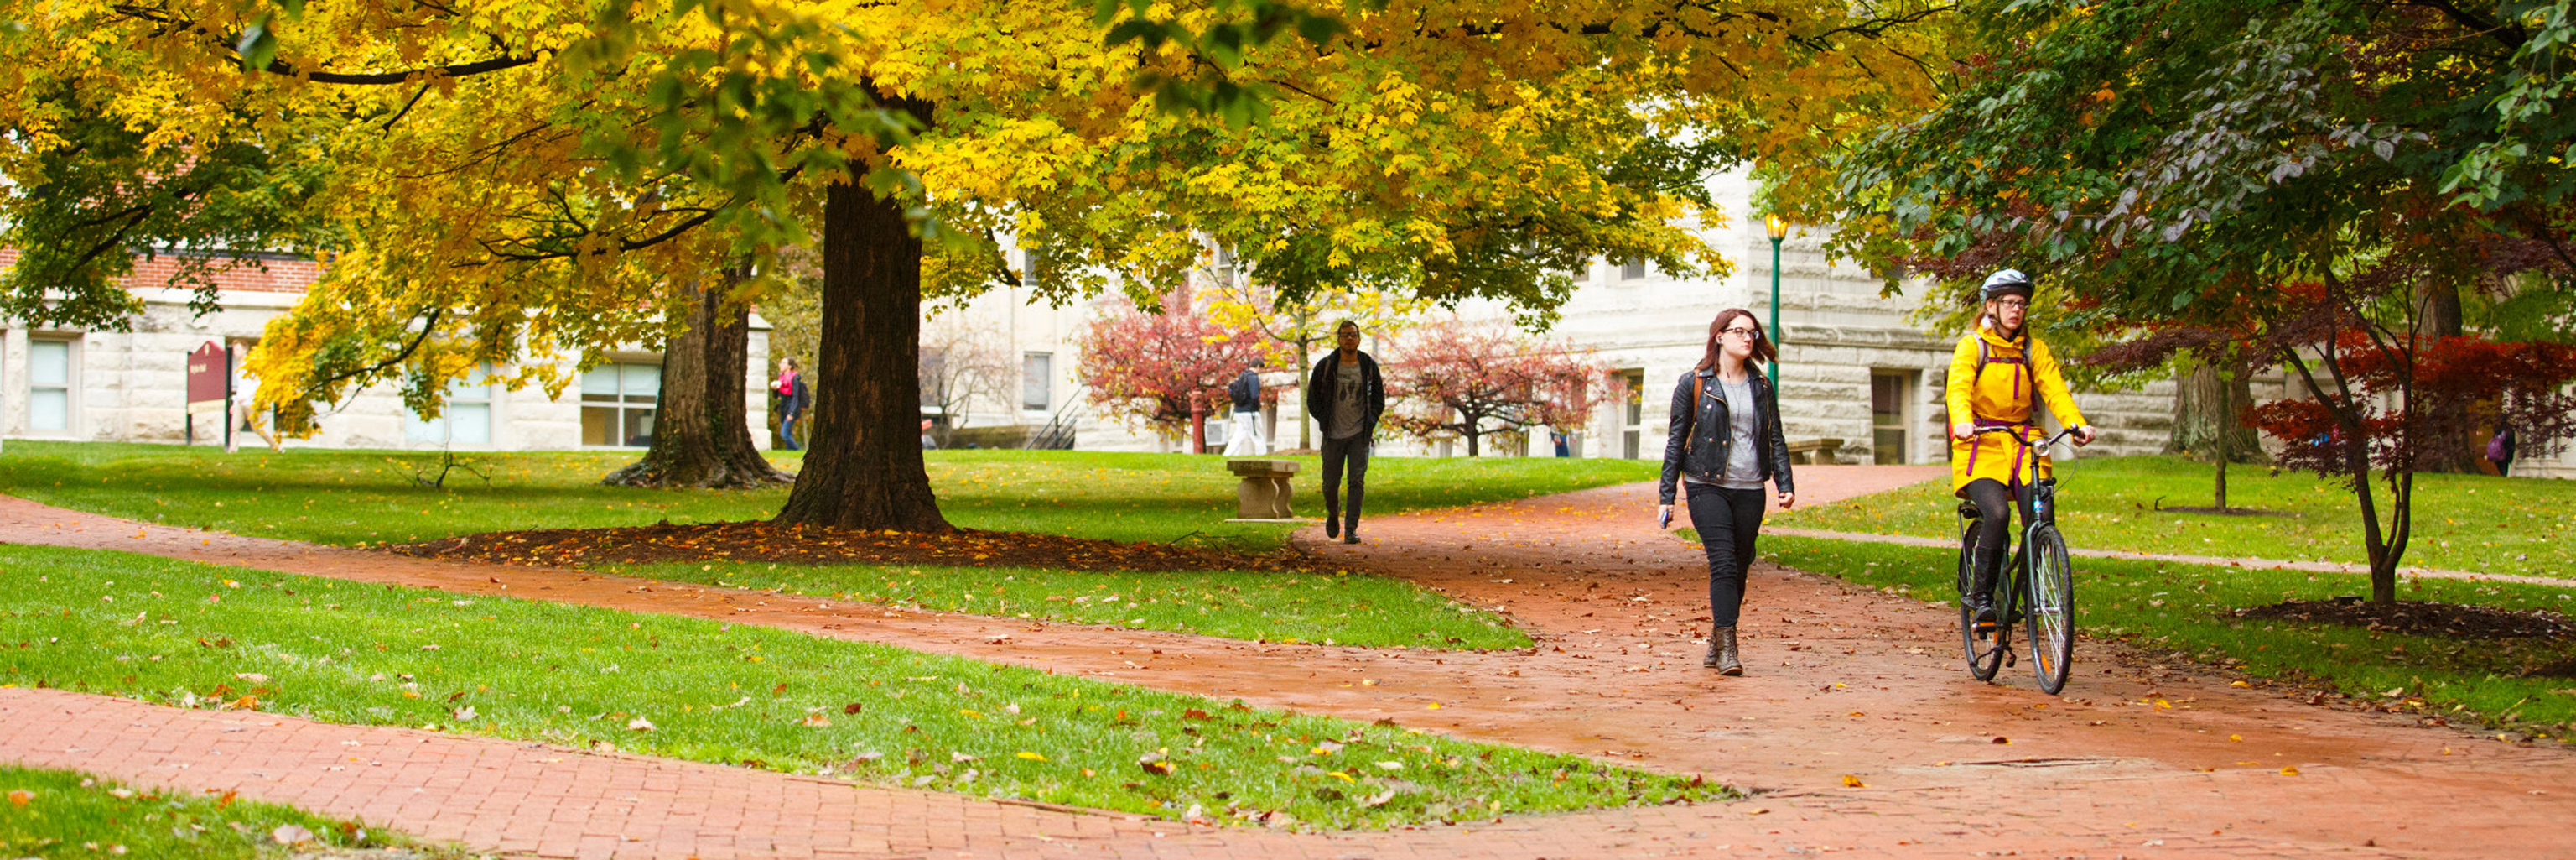 Students walking along a brick path through campus.